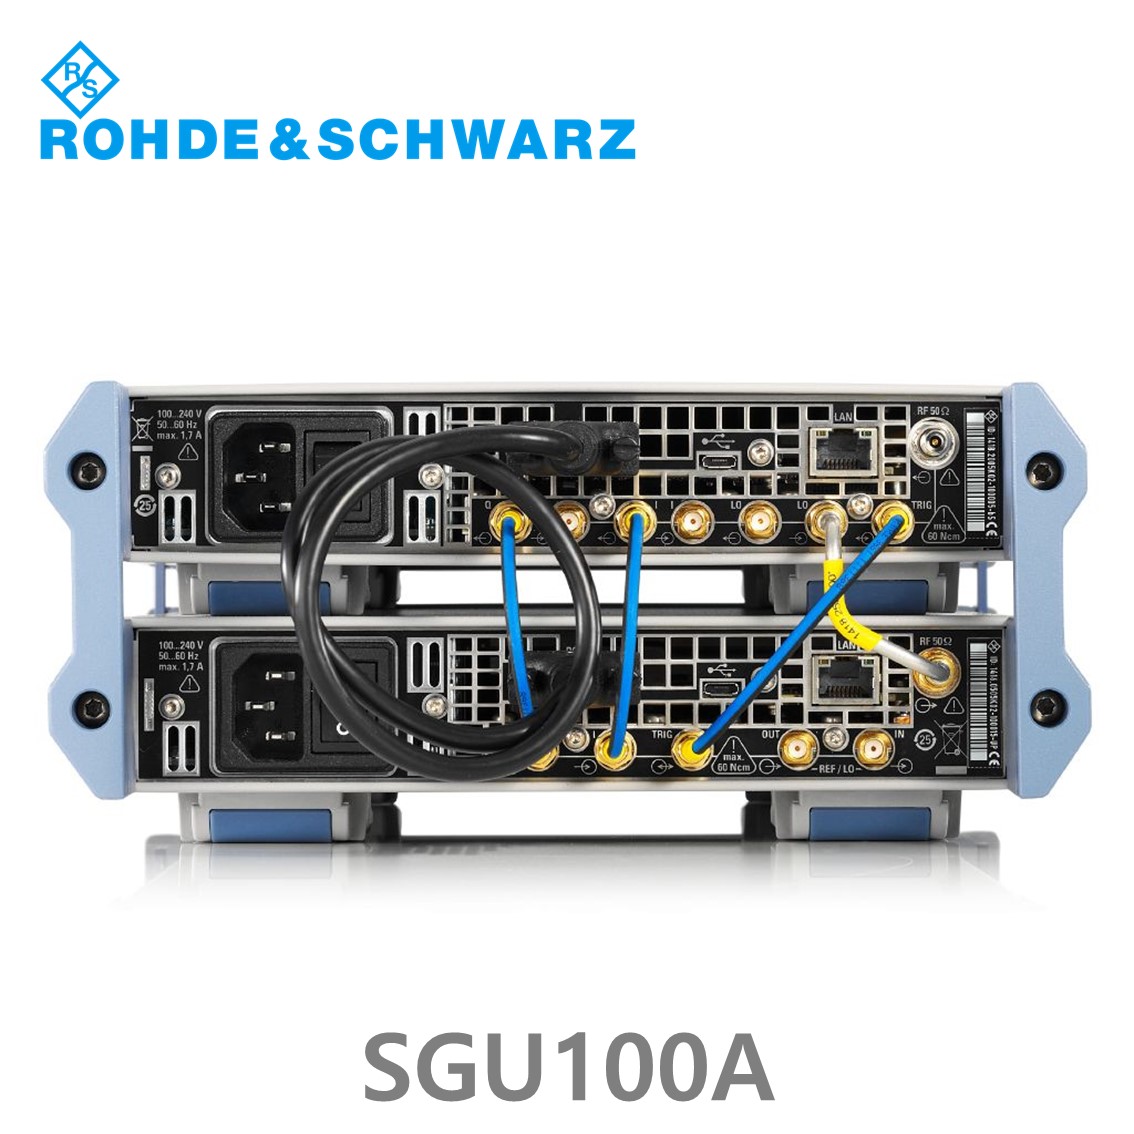 [ 로데슈바르즈 ] SGU100A  SGMA Upconverter 10 MHz ~ 40 GHz, (1418.2005.02)